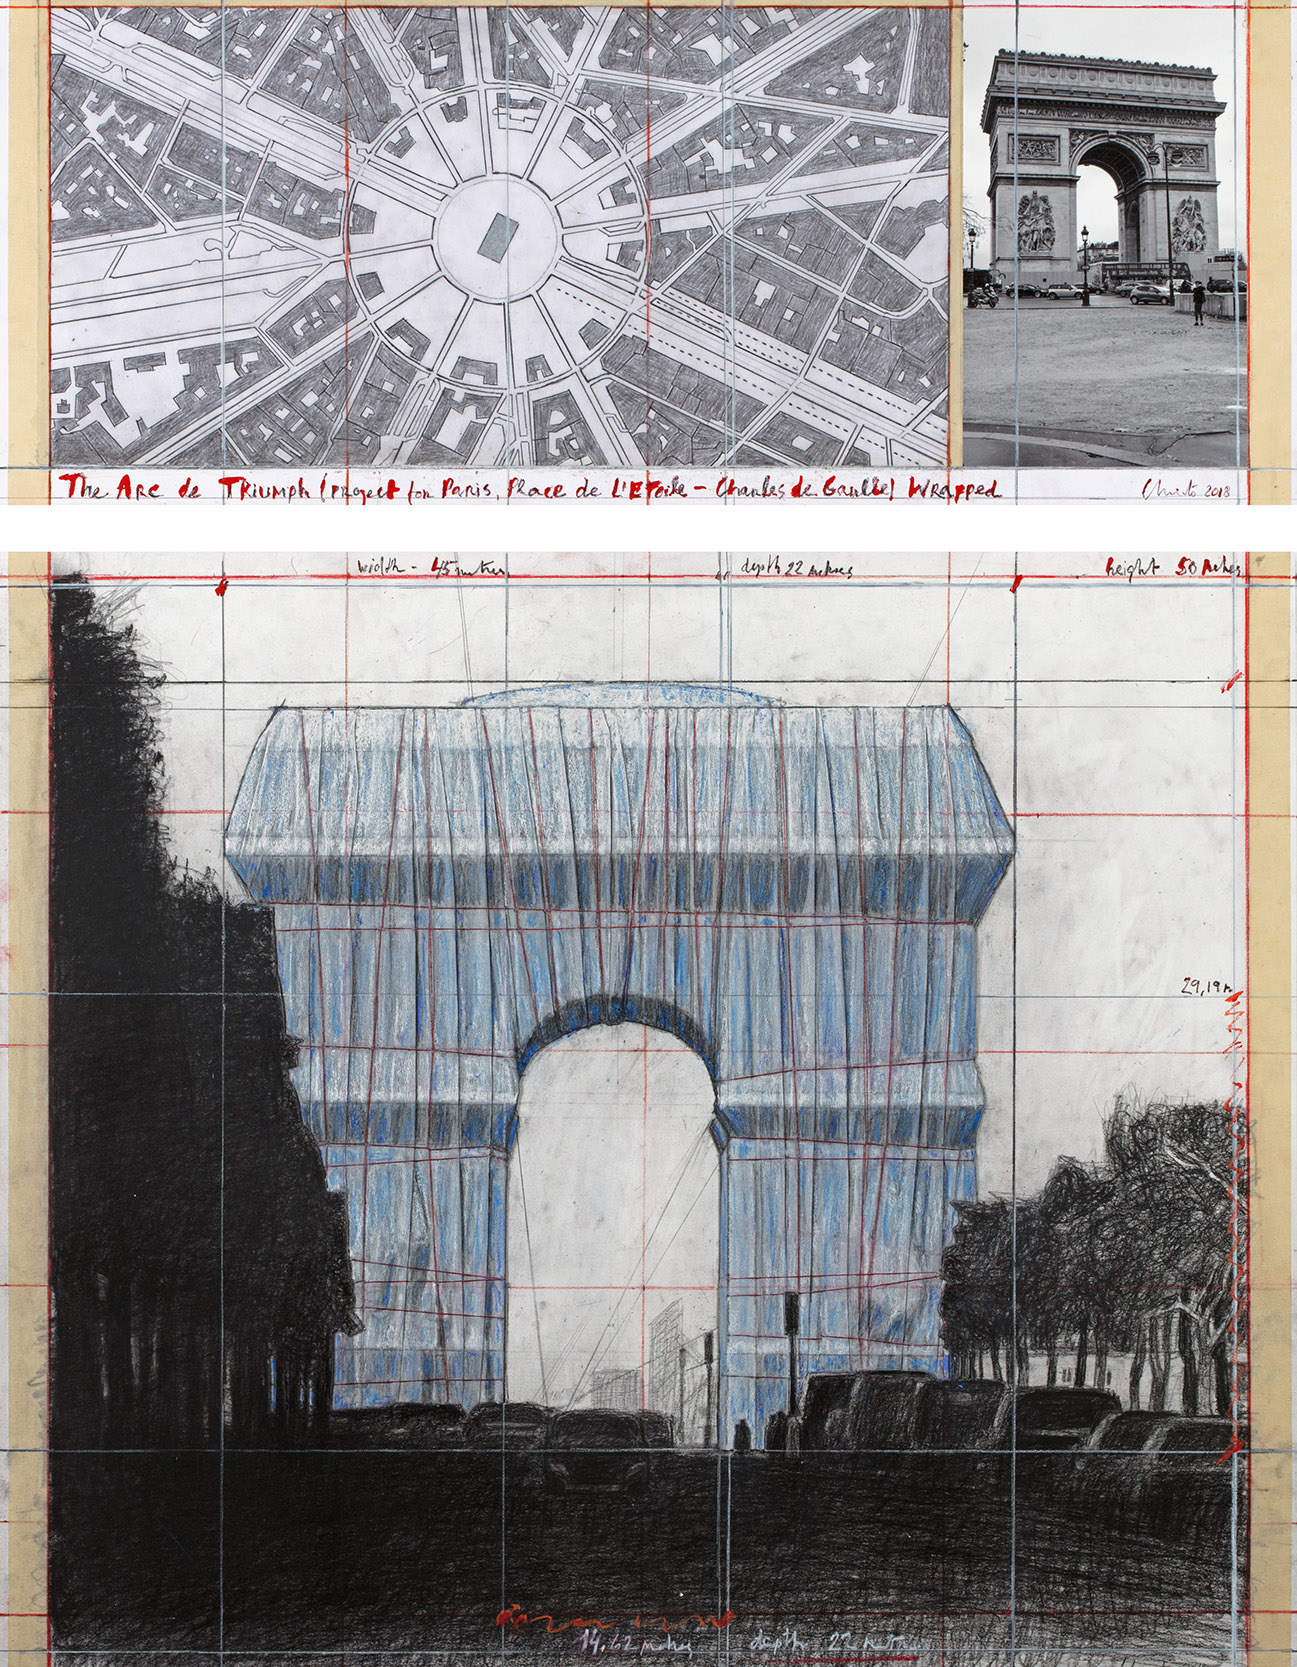 L'Arc de Triomphe, Wrapped - The Arc de Triumph (Project for Paris, Place de l'Etoile – Charles de Gaulle) Wrapped